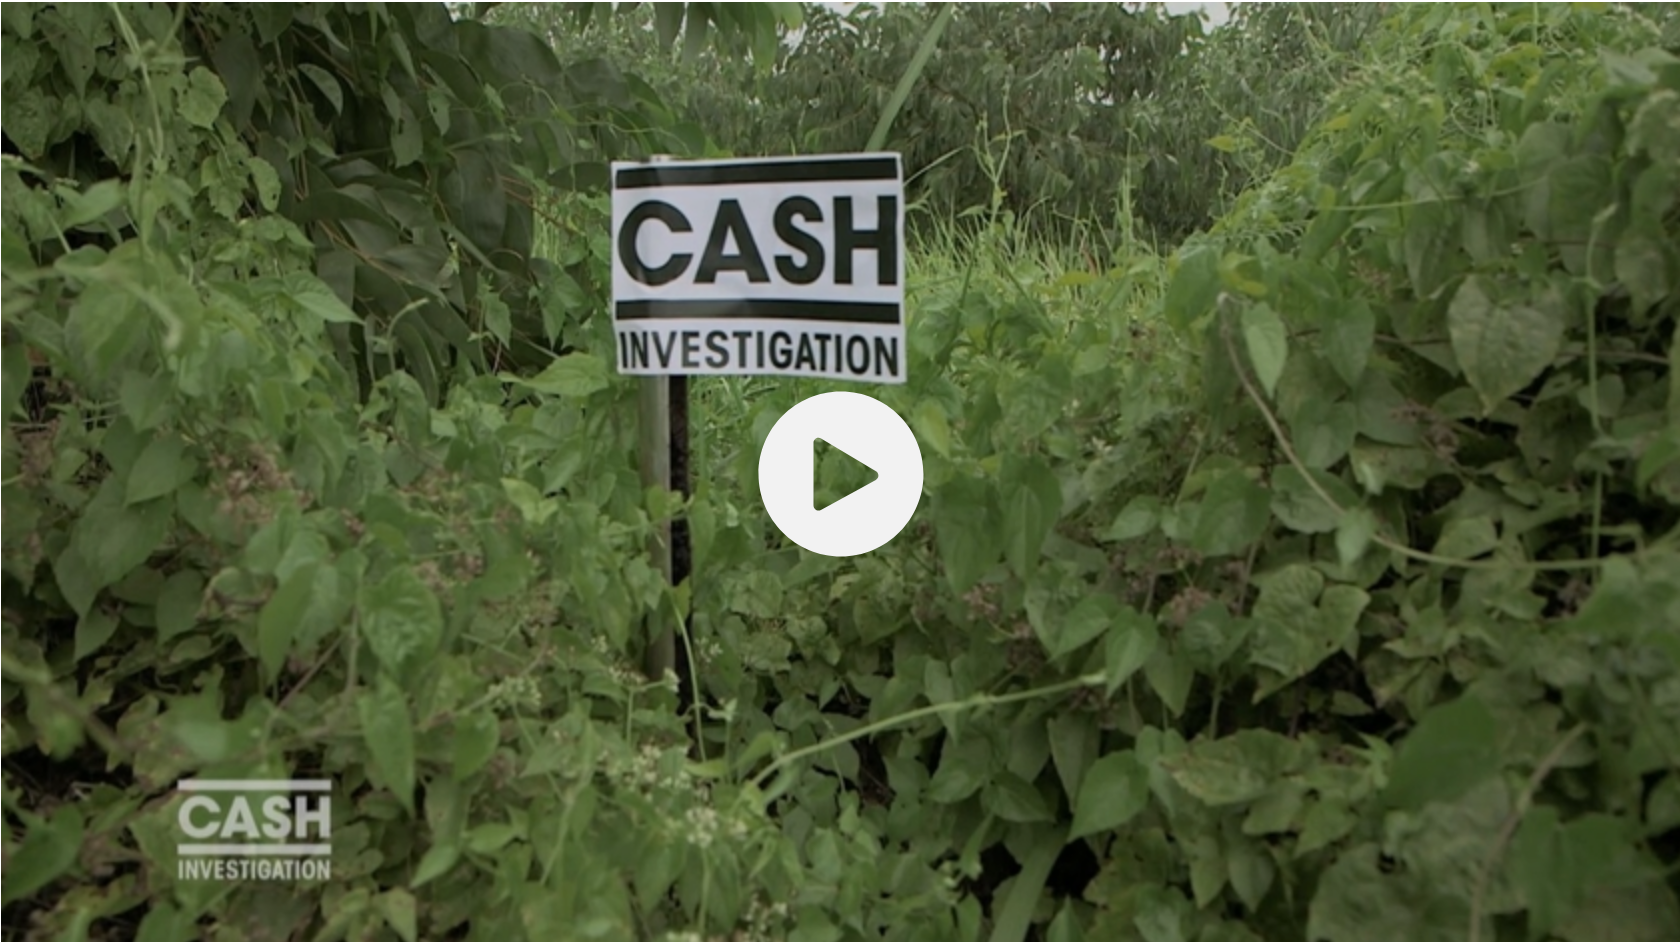 Cash investigation: RAZZIA sur le bois